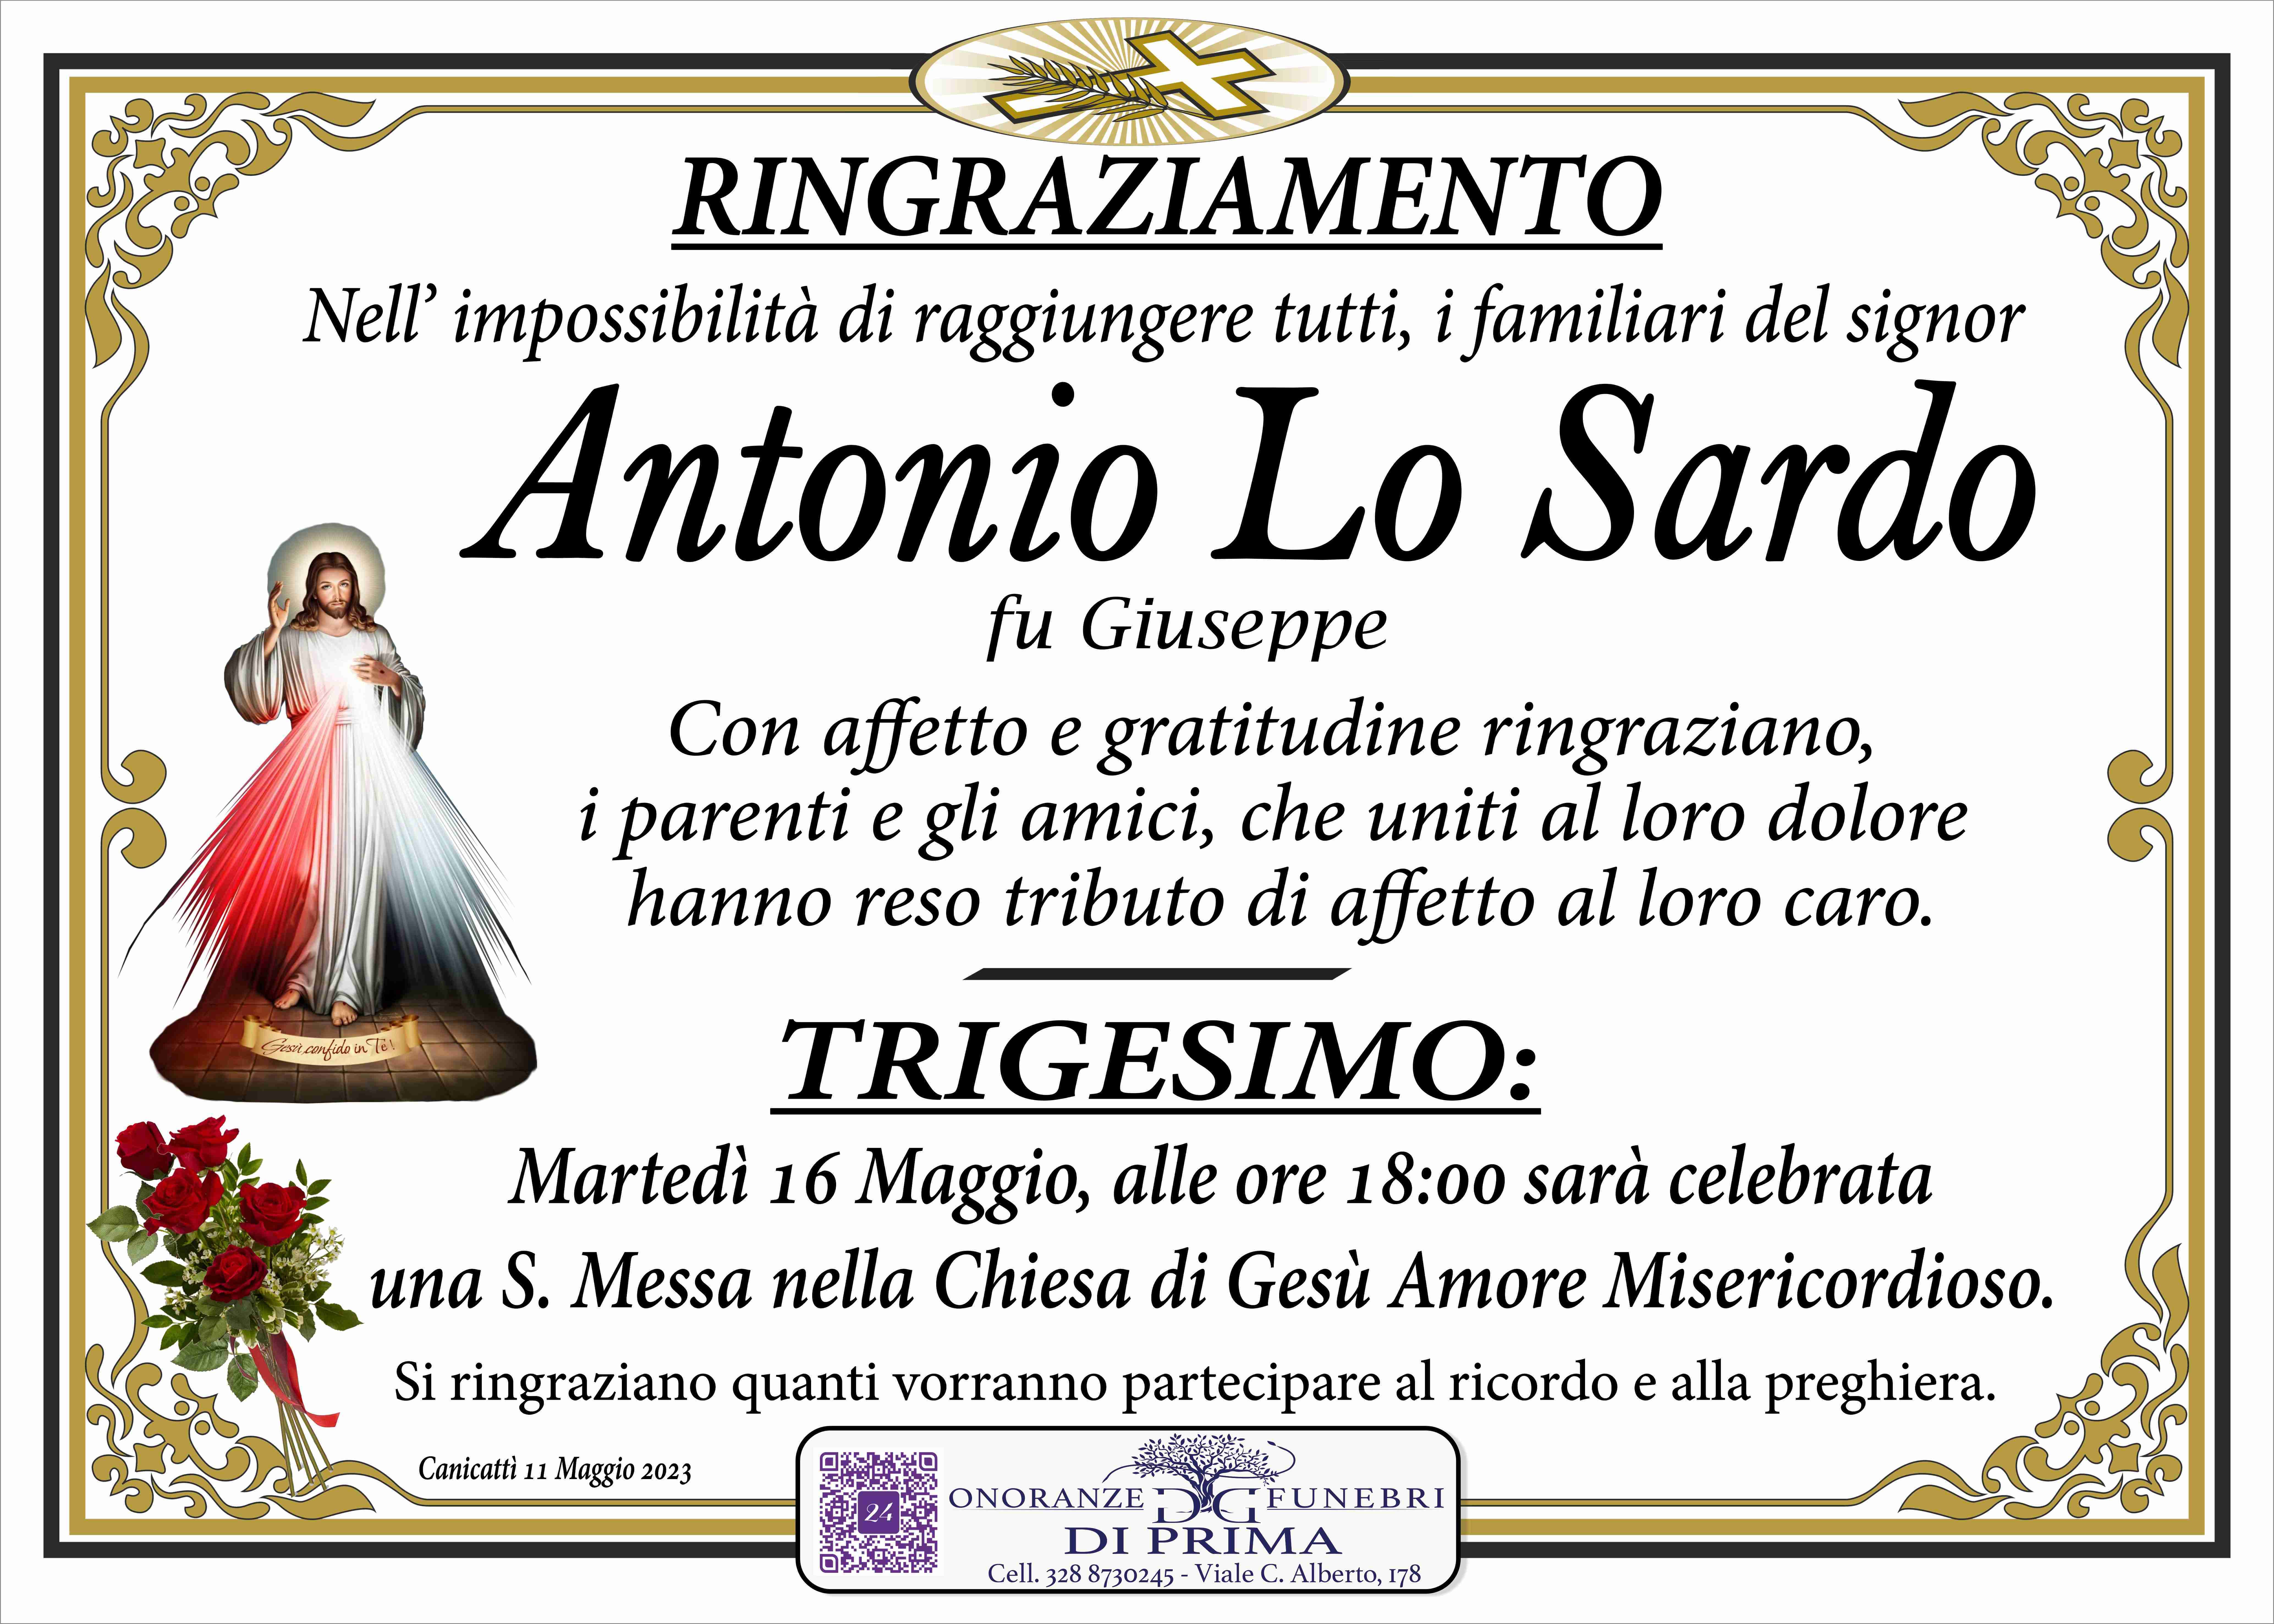 Antonio Lo Sardo